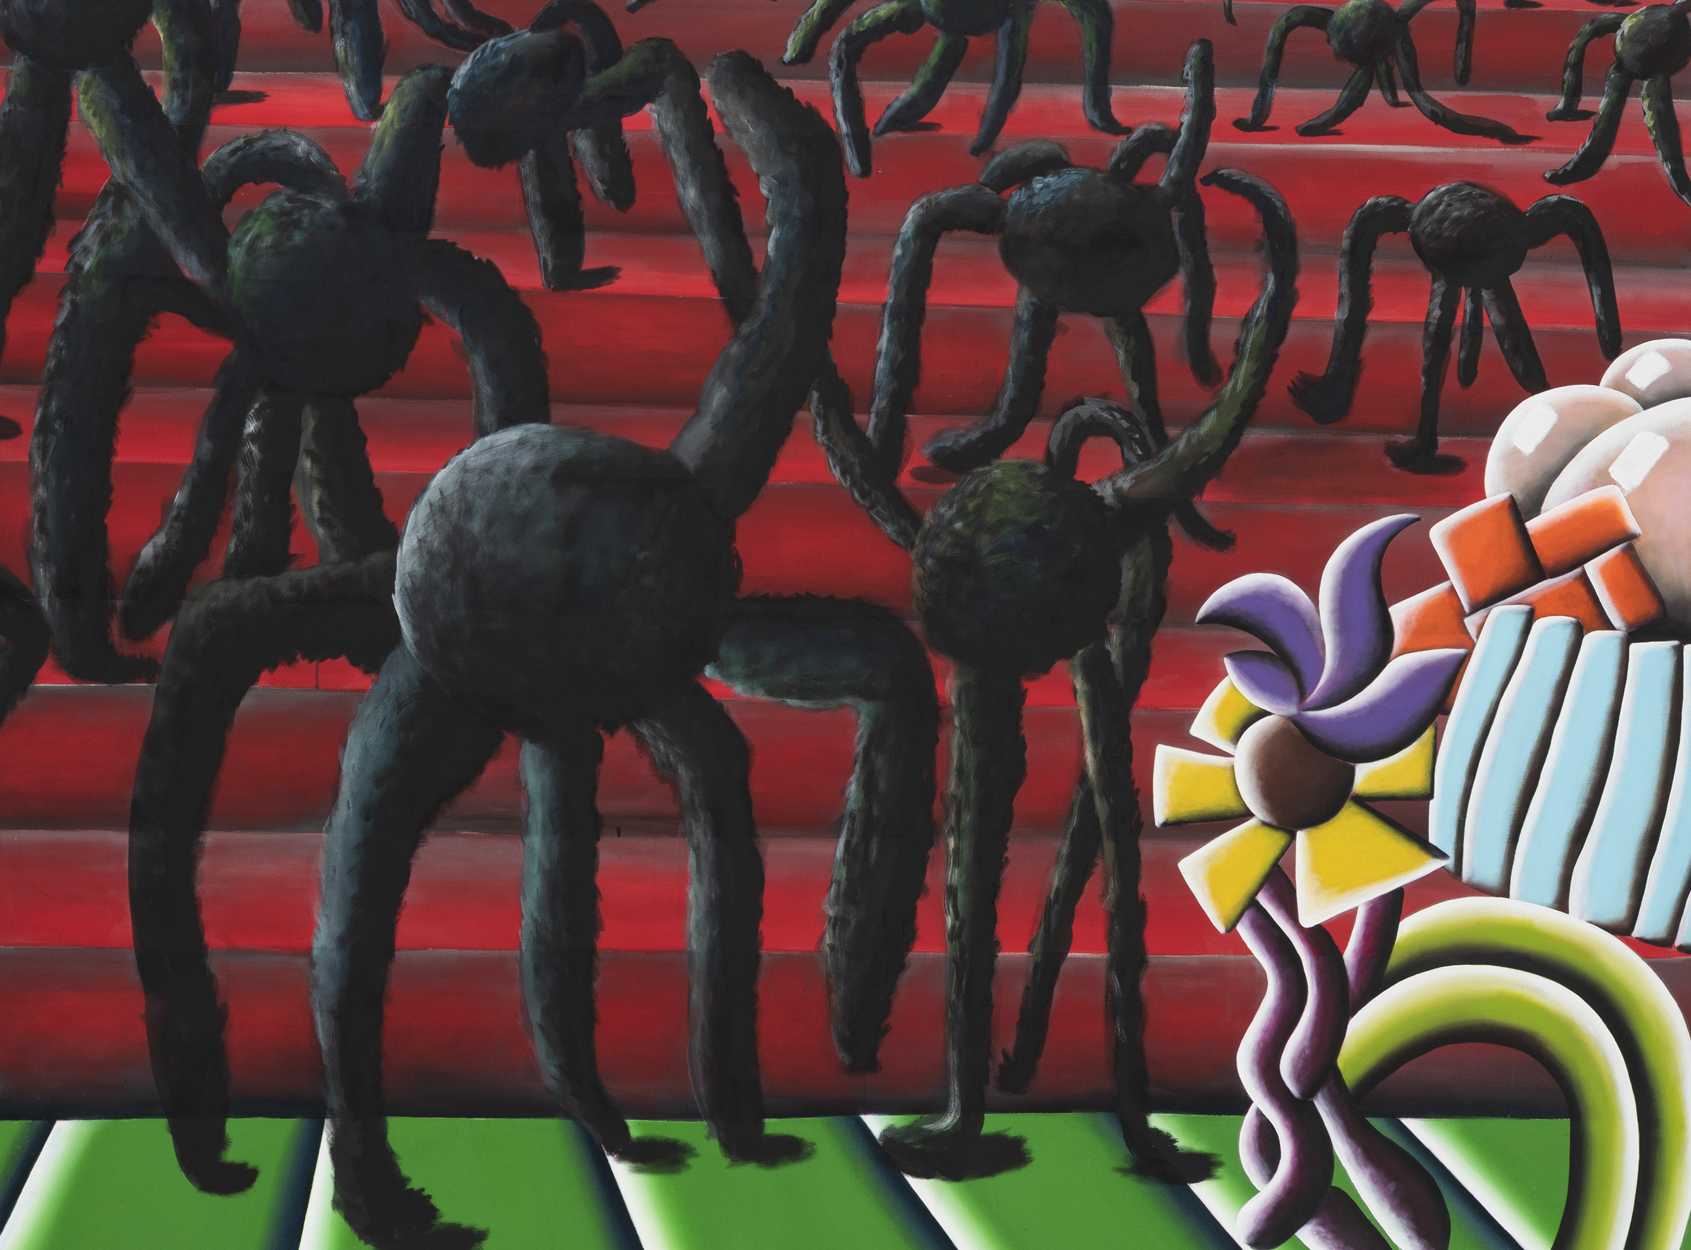 Die Abbildung zeigt ein Kunstwerk von Andreas Schulze. Zu sehen sind schwarze Wesen mit sechs Beinen und einem runden Körper, die eine rote Treppe herunter laufen. Die Fotoaufnahme stammt von Ingo Kniest.